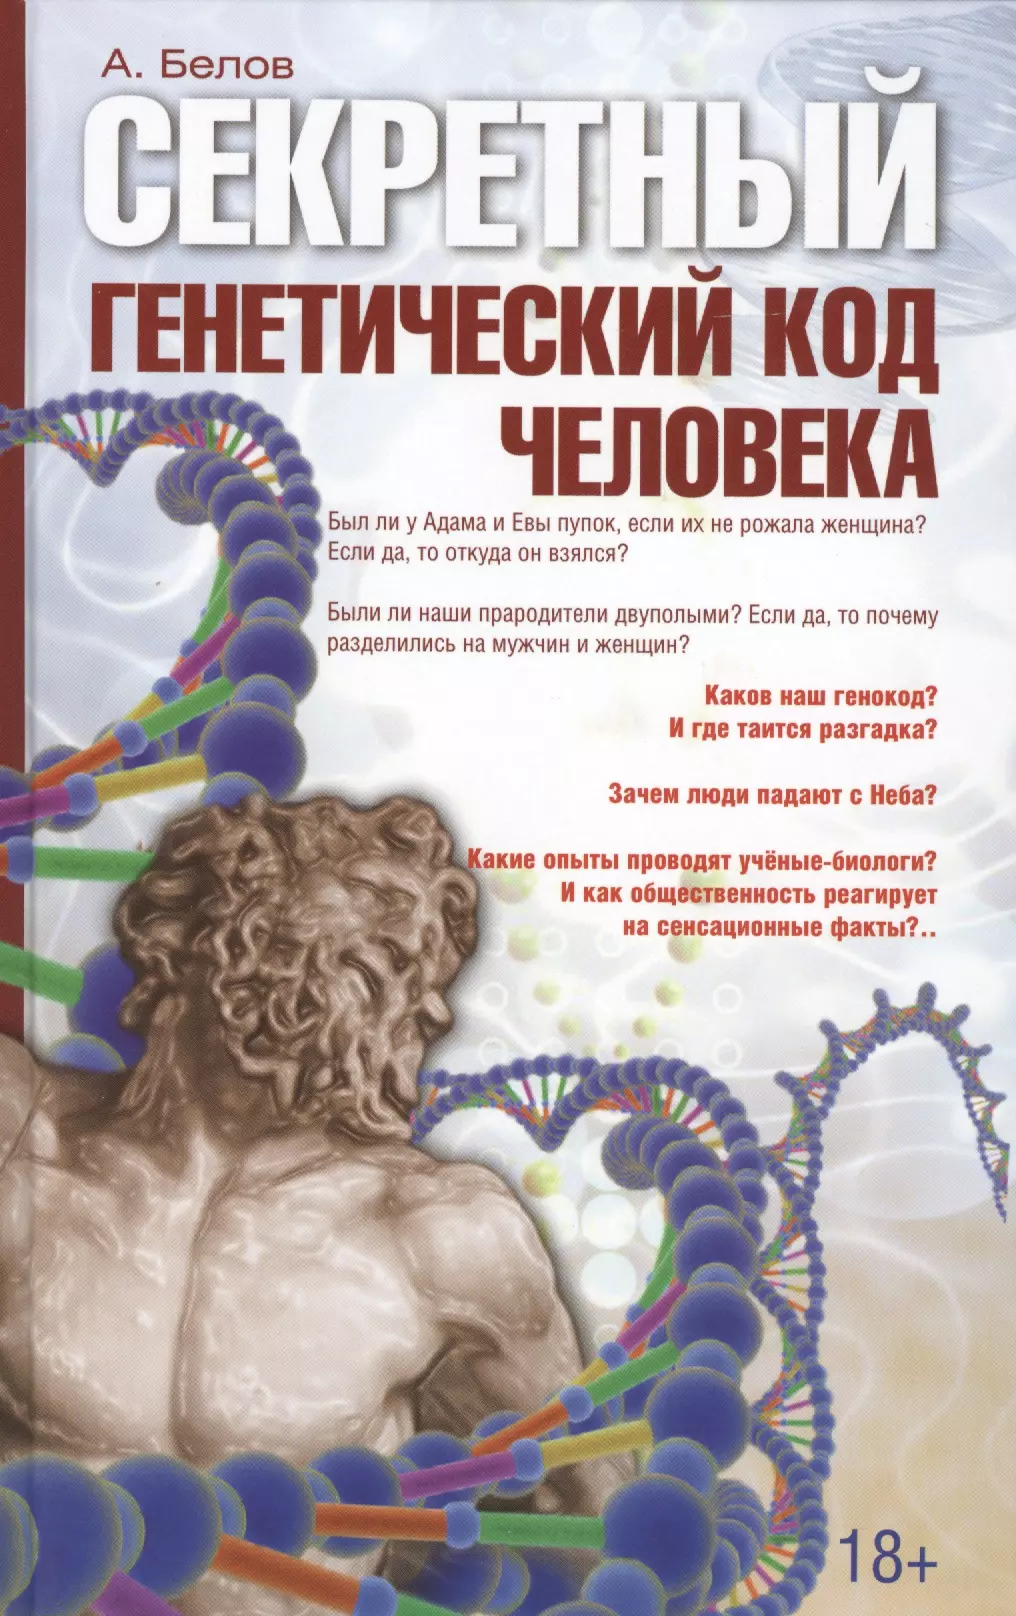 Белов Александр Иванович - Секретный генетический код человека 2-е изд.